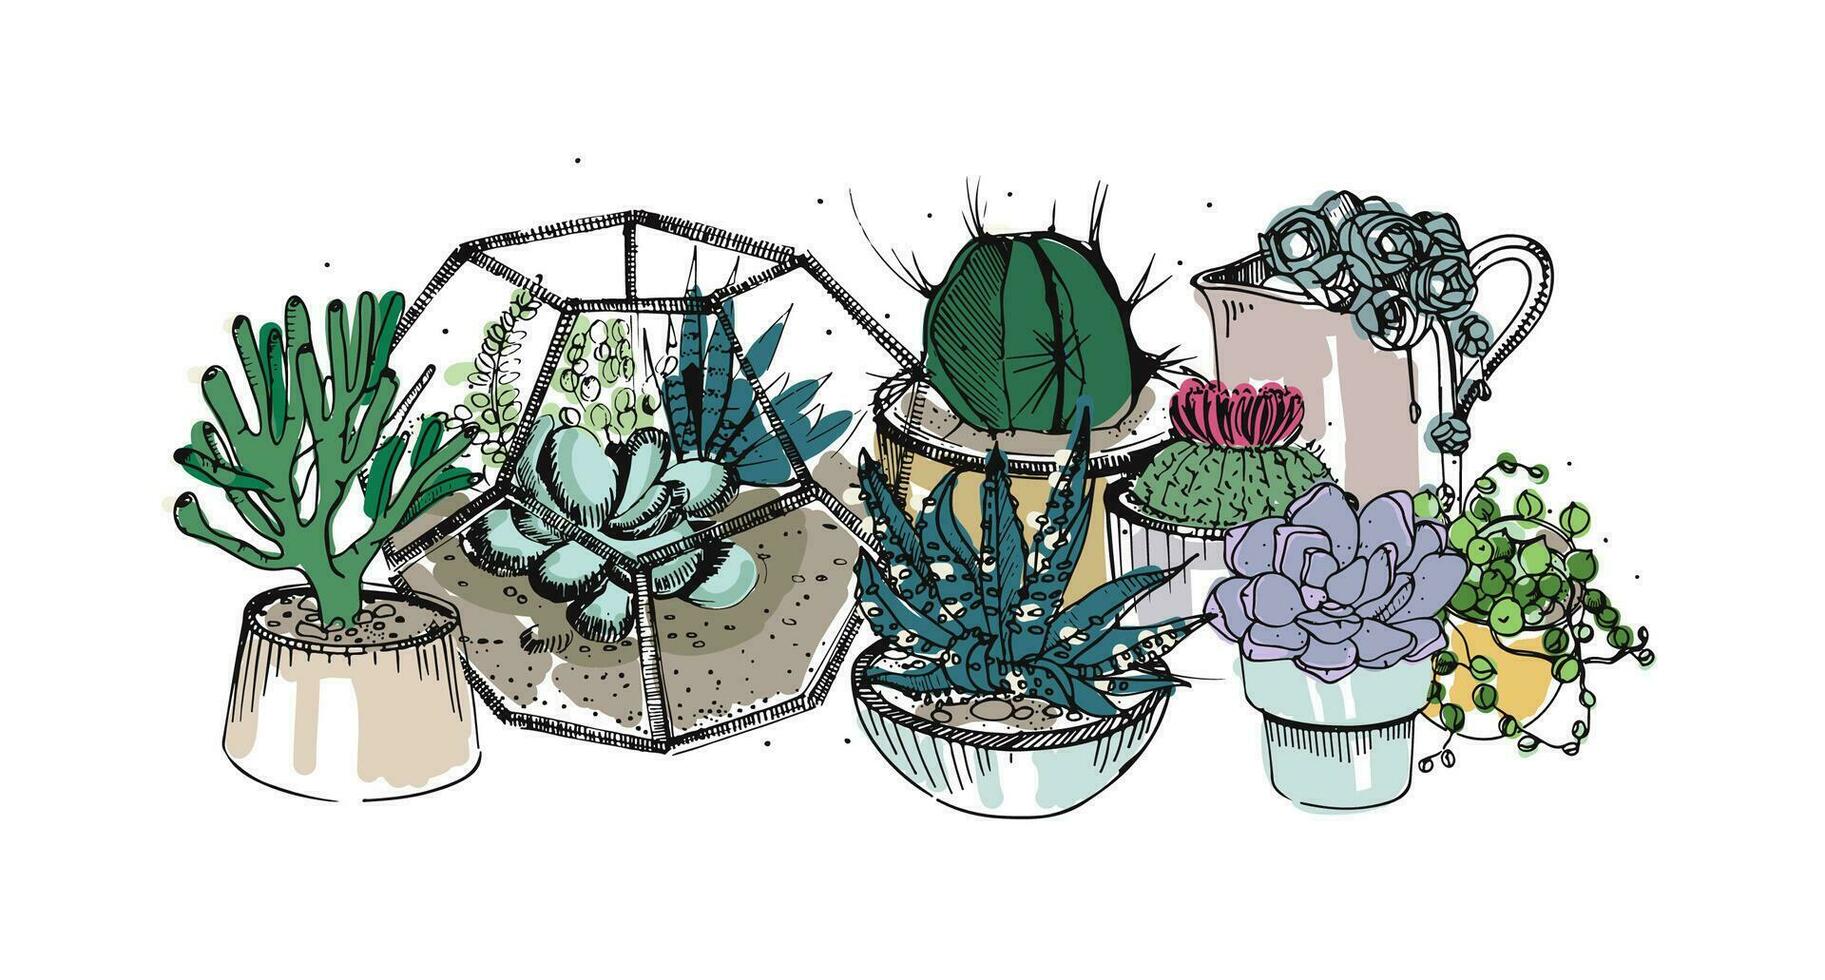 kaktus och suckulenter sammansättning. samling växter i krukor, florarium. färgrik vektor hand dragen illustration i skiss stil, isolerat på vit bakgrund.